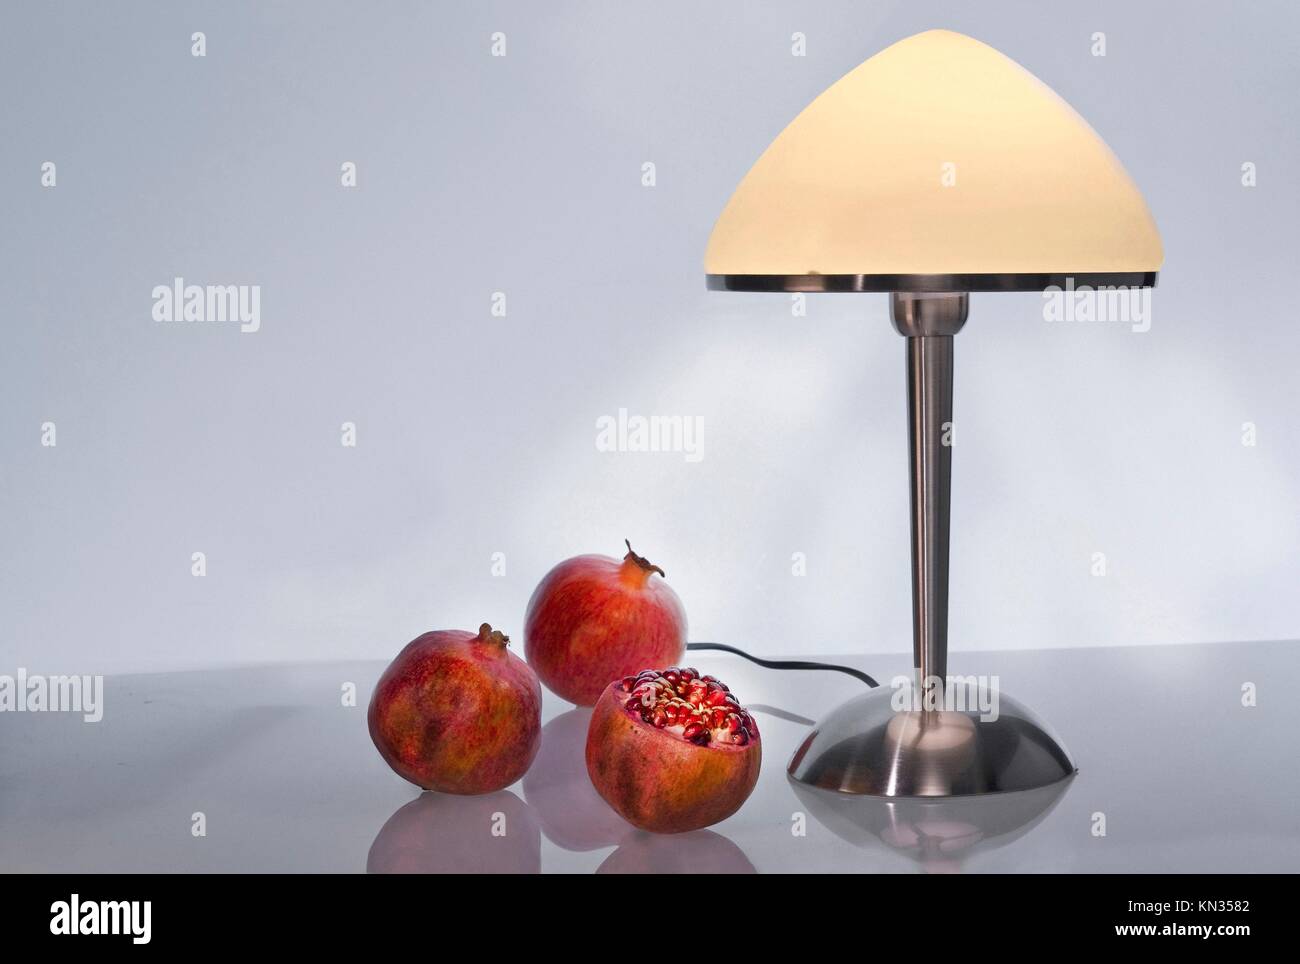 Still life with lamp and pomegranates. Stock Photo